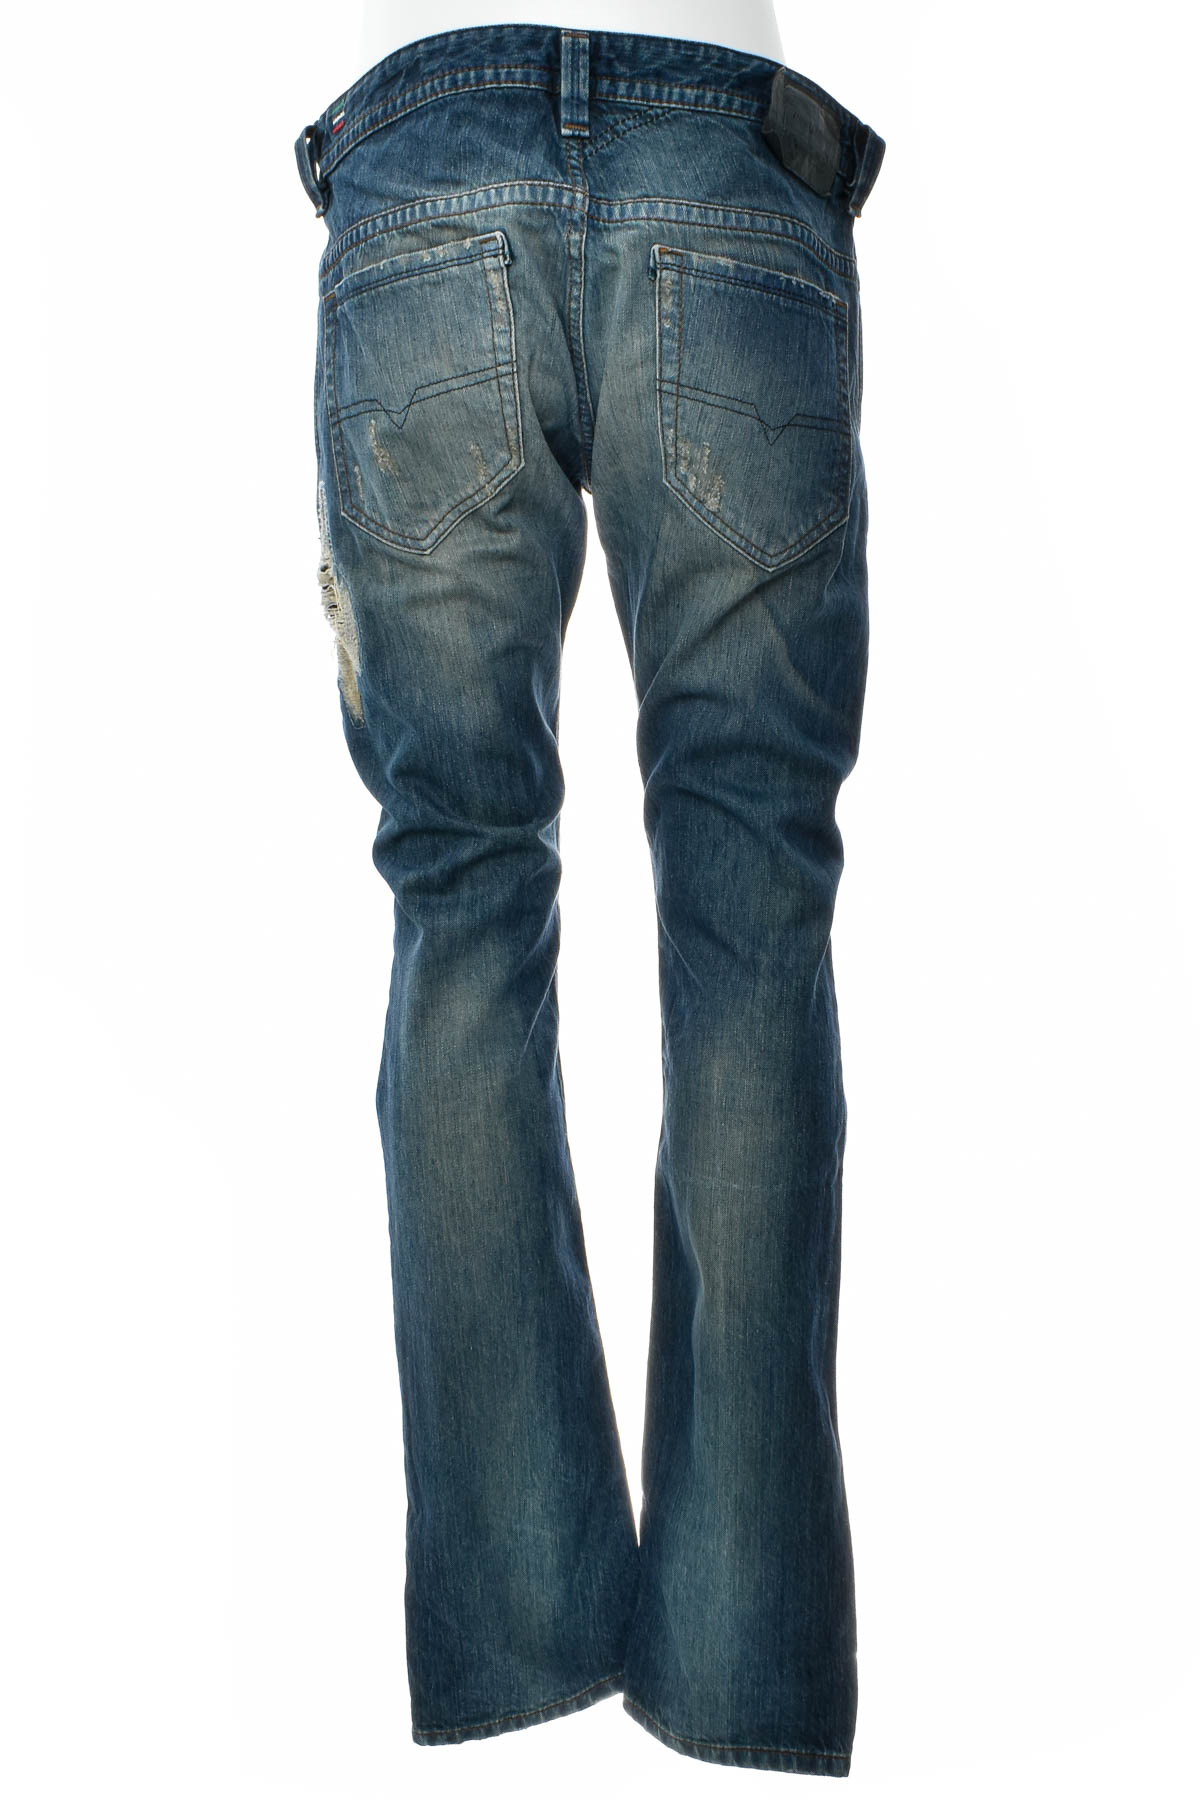 Men's jeans - DIESEL - 1